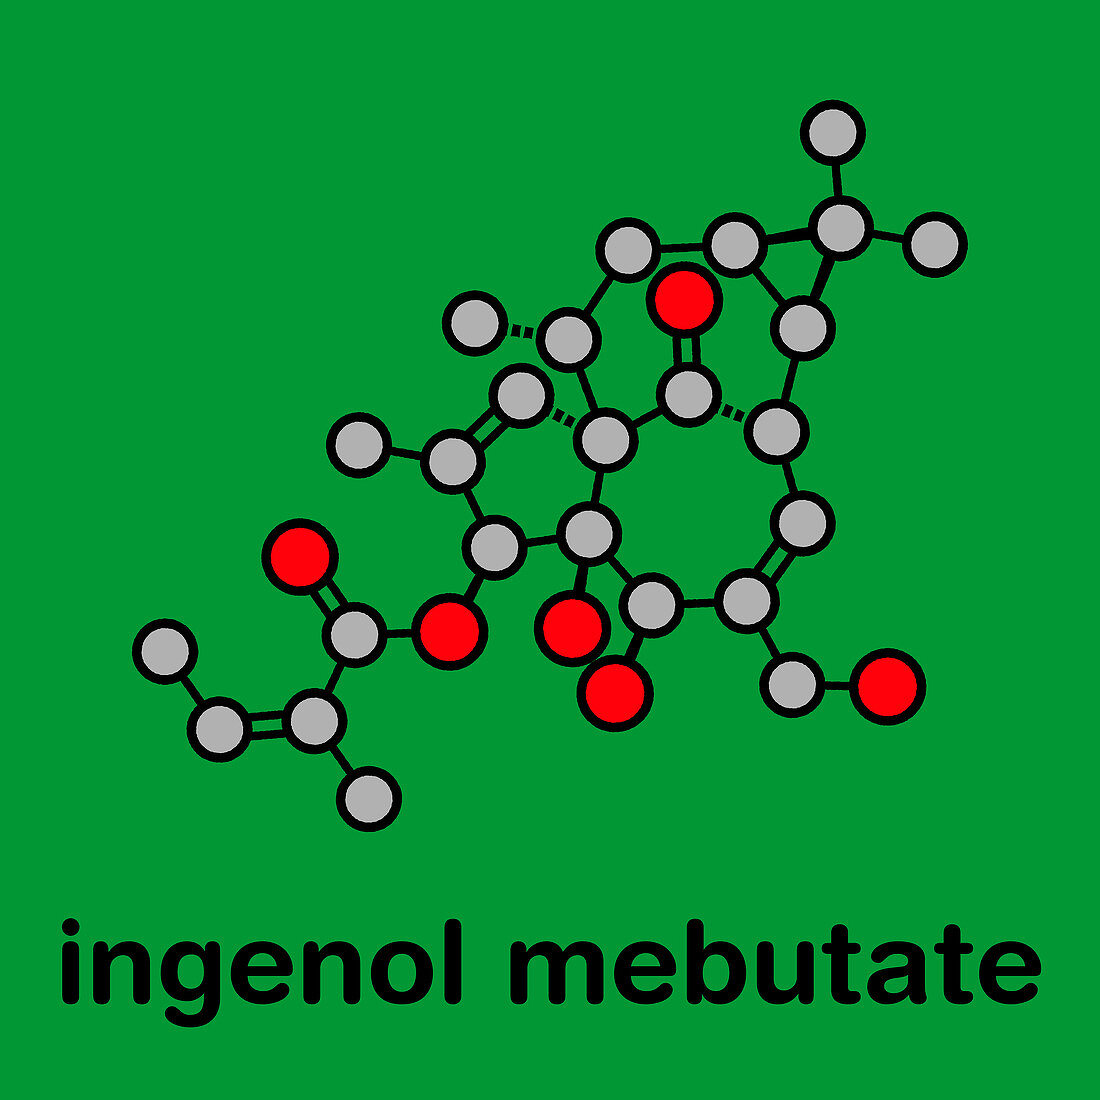 Ingenol mebutate actinic keratosis drug, molecular model